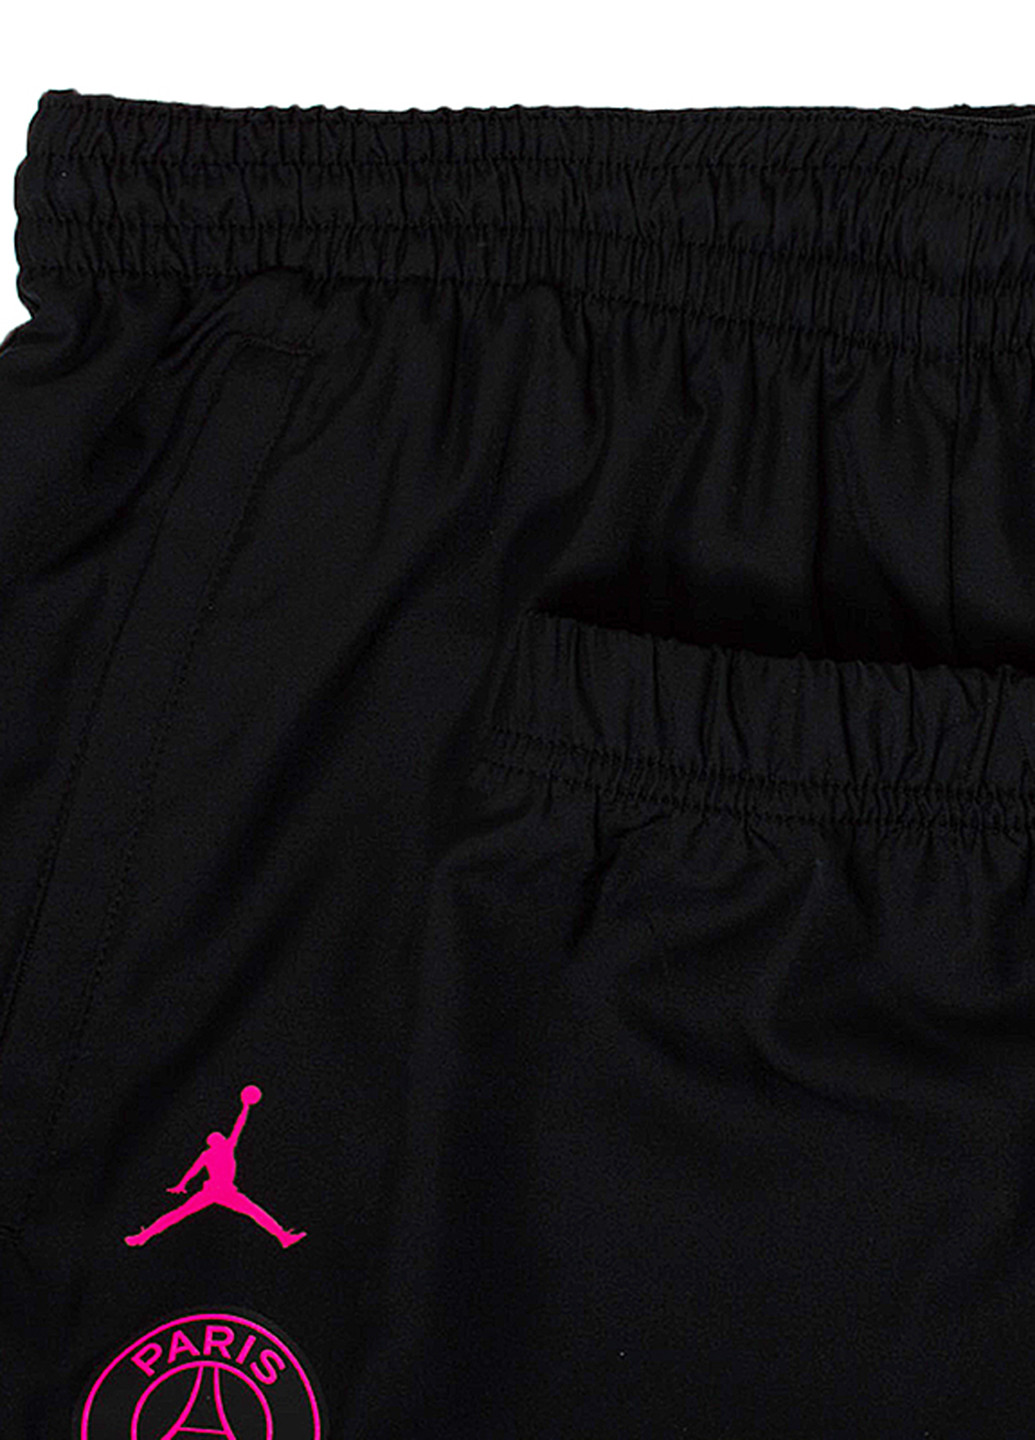 Серый демисезонный костюм (олимпийка, брюки) брючный Nike Nike PSG MNK DRY STRKE TRKSUIT W